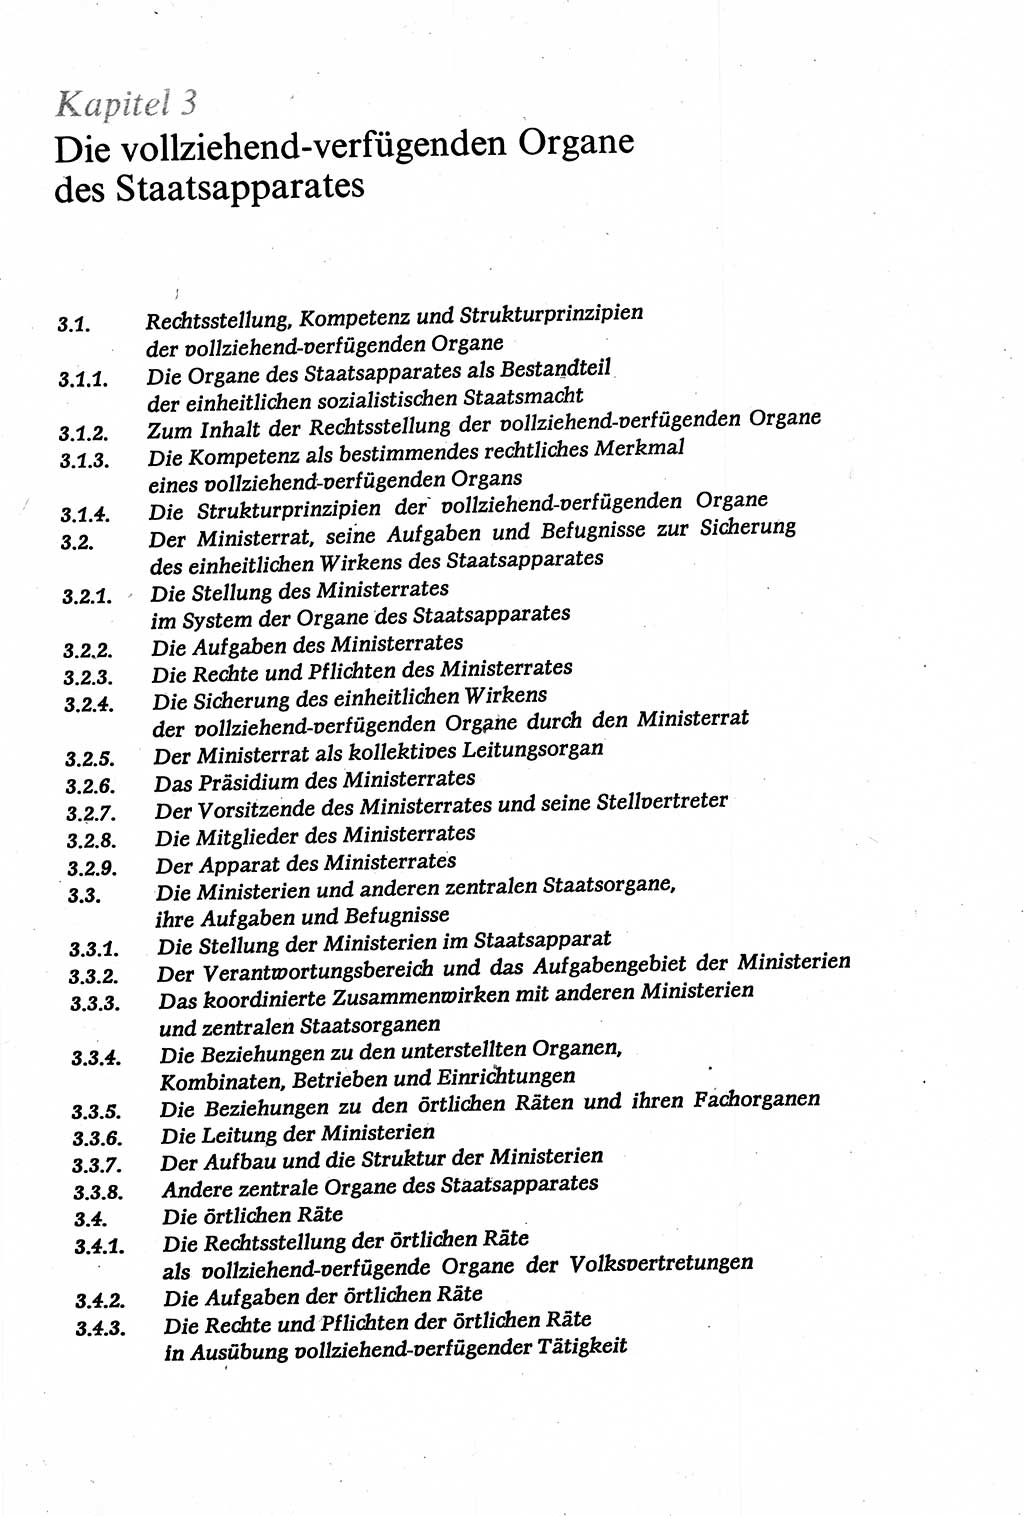 Verwaltungsrecht [Deutsche Demokratische Republik (DDR)], Lehrbuch 1979, Seite 89 (Verw.-R. DDR Lb. 1979, S. 89)